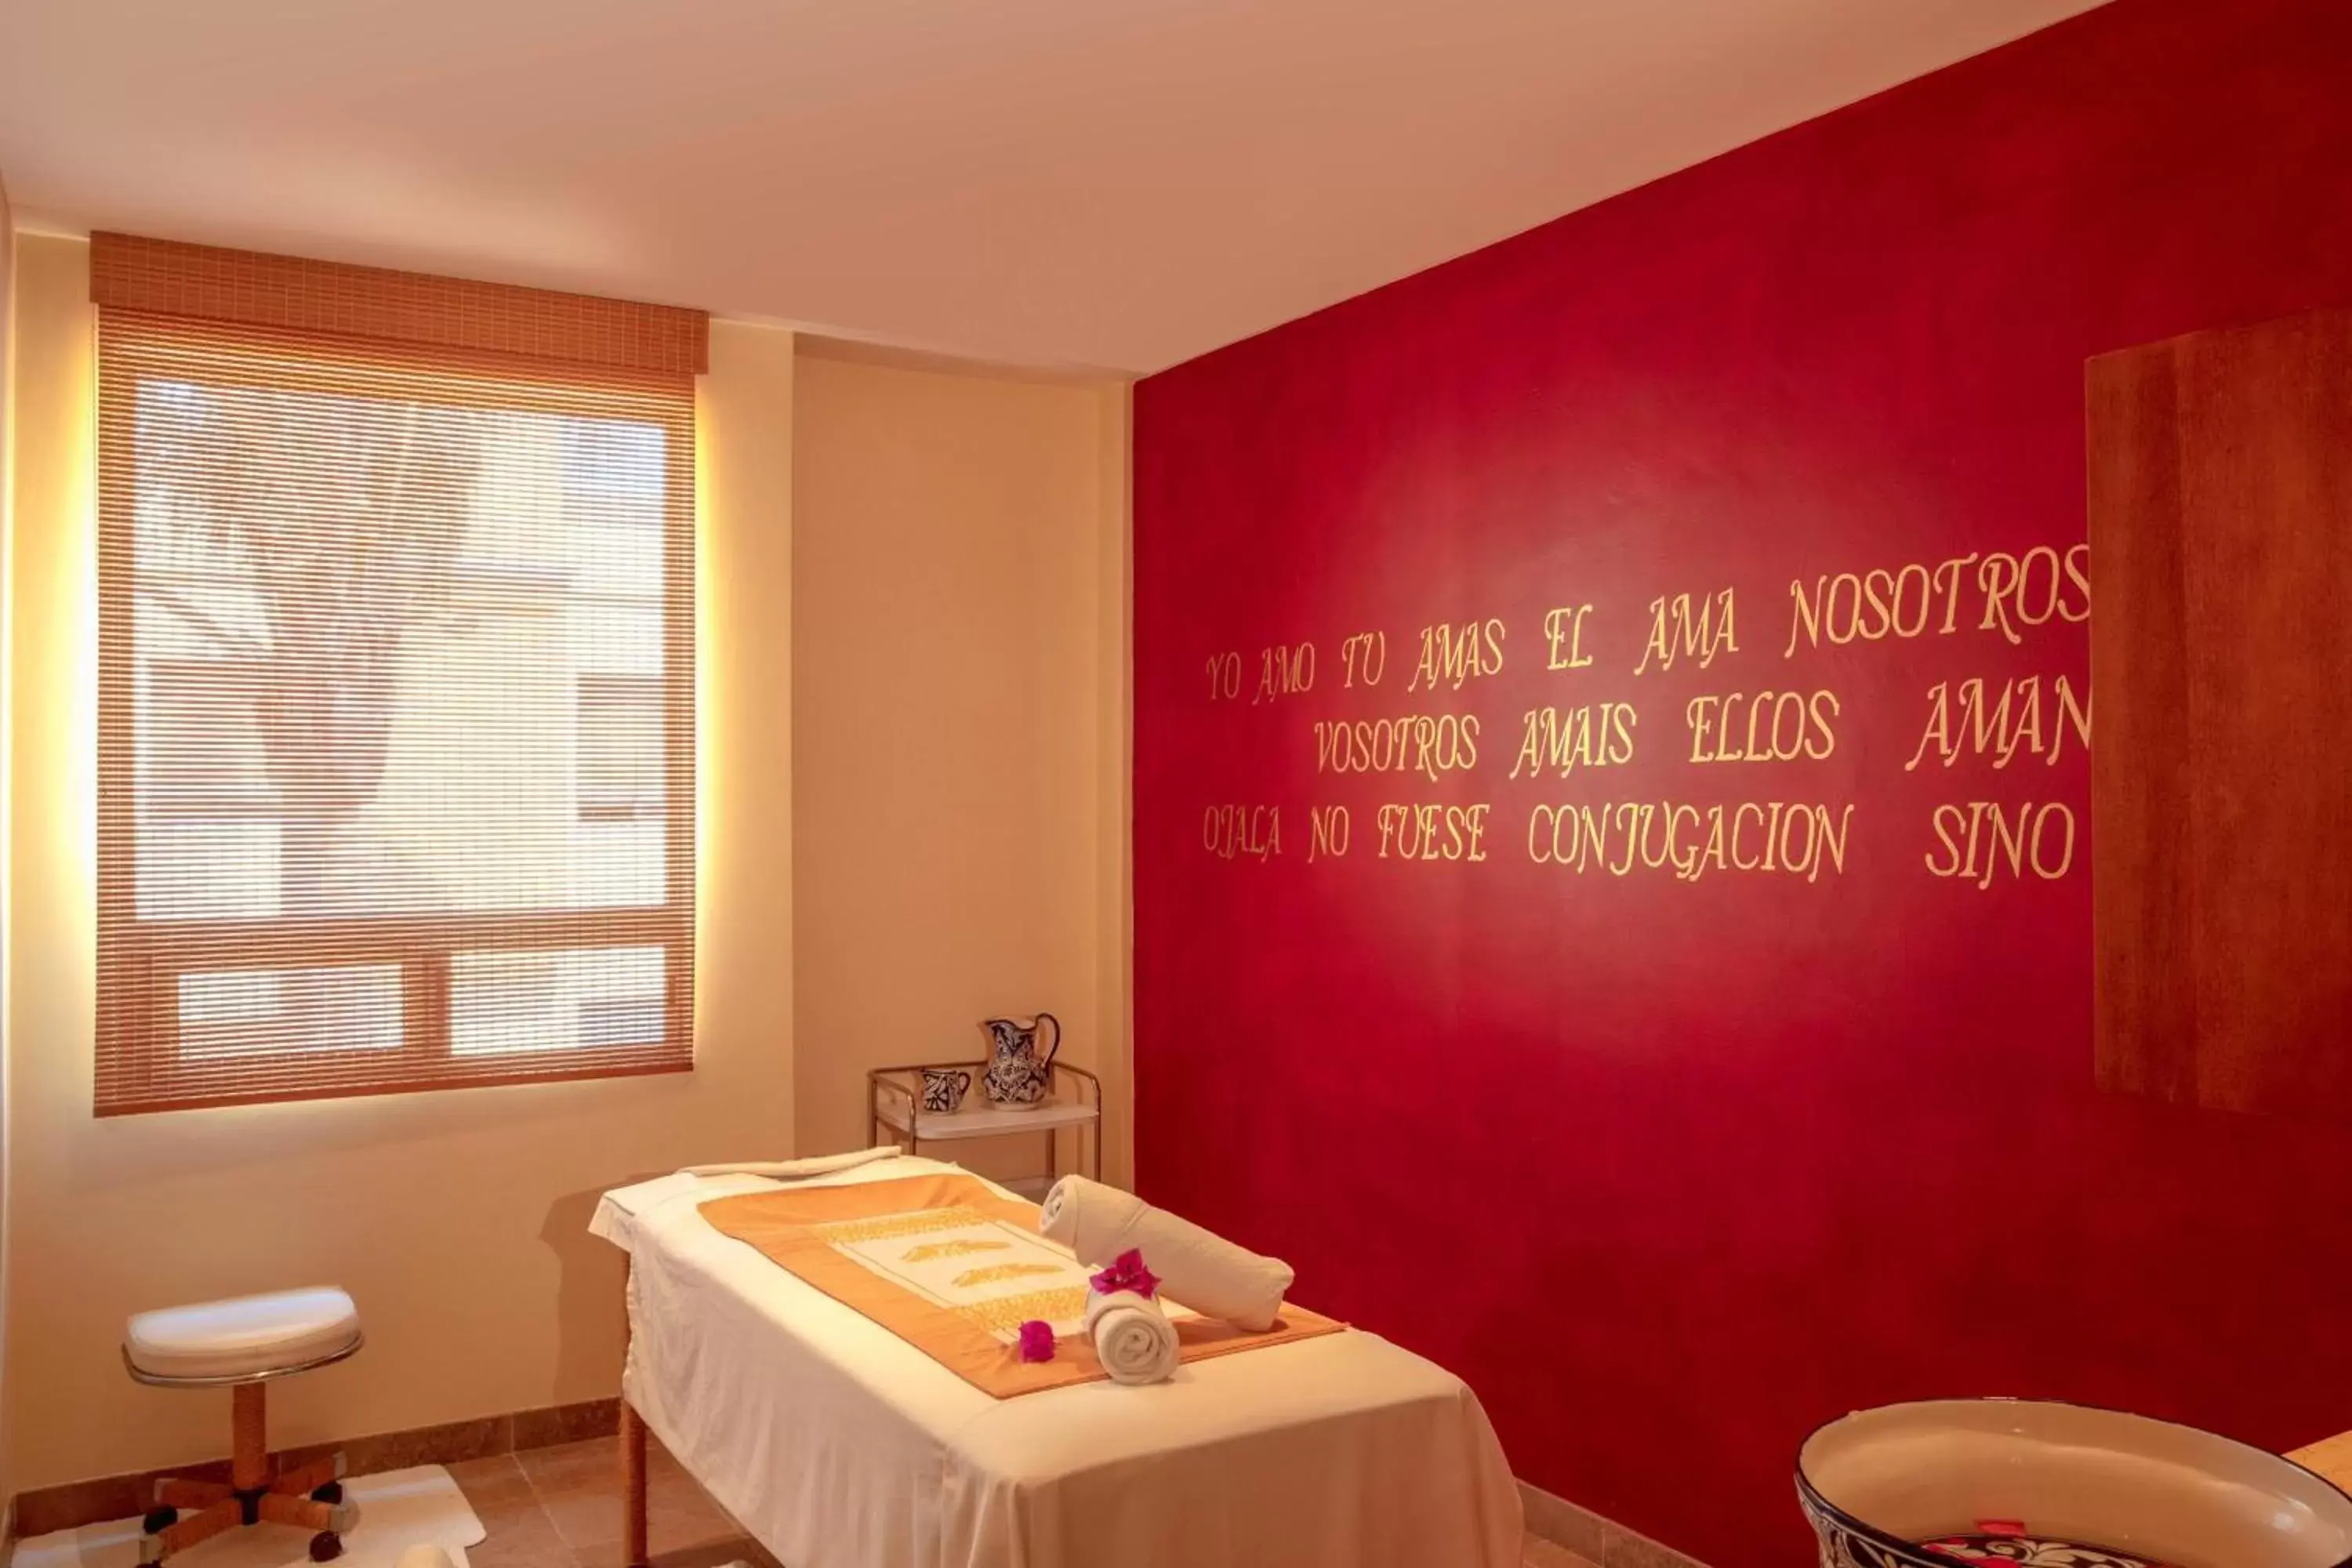 Spa and wellness centre/facilities, Bathroom in Ixtapan de la Sal Marriott Hotel & Spa